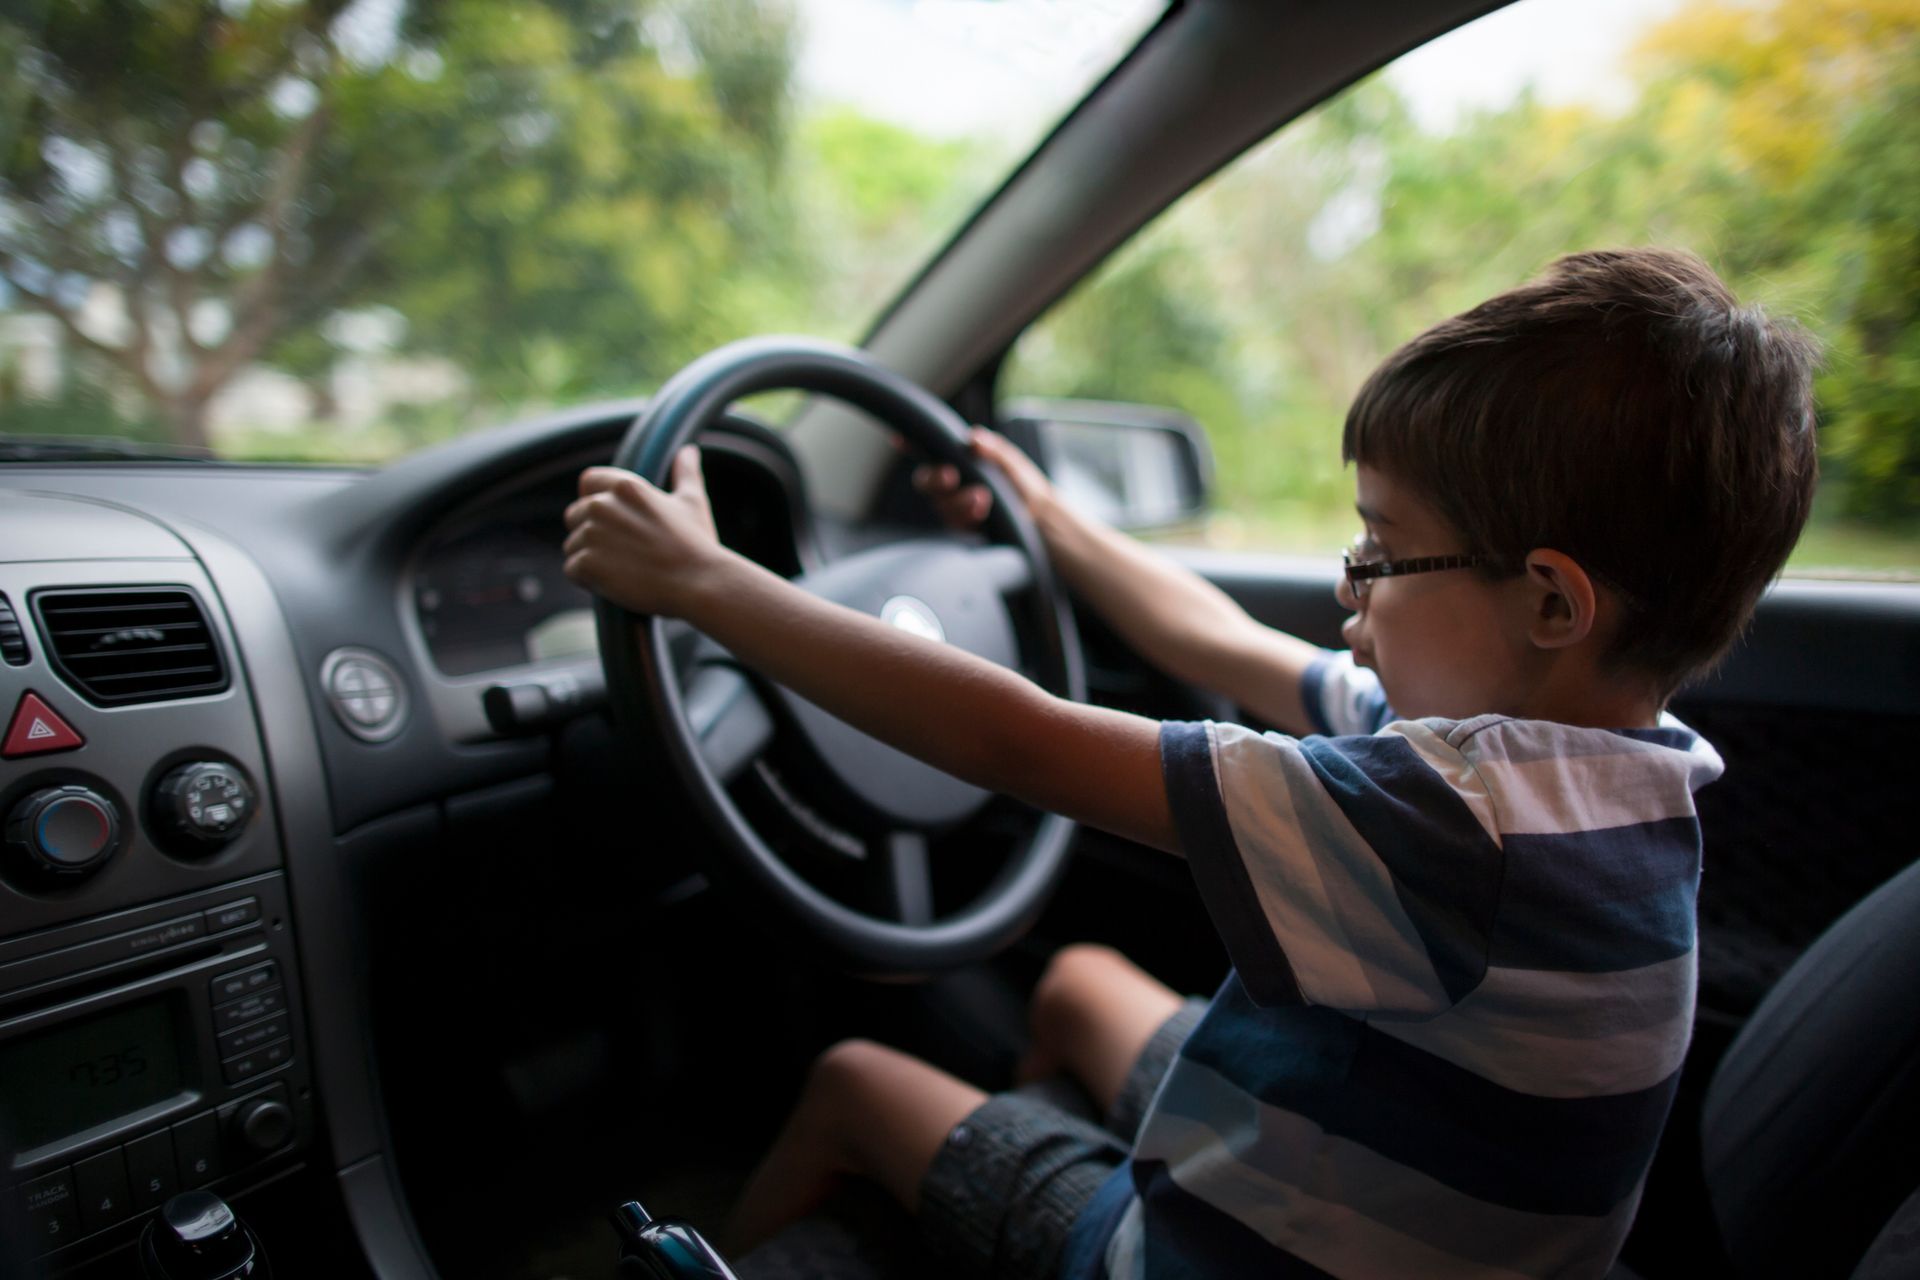 Un enfant de 8 ans filmé au volant d'une voiture : 'C'est risquer